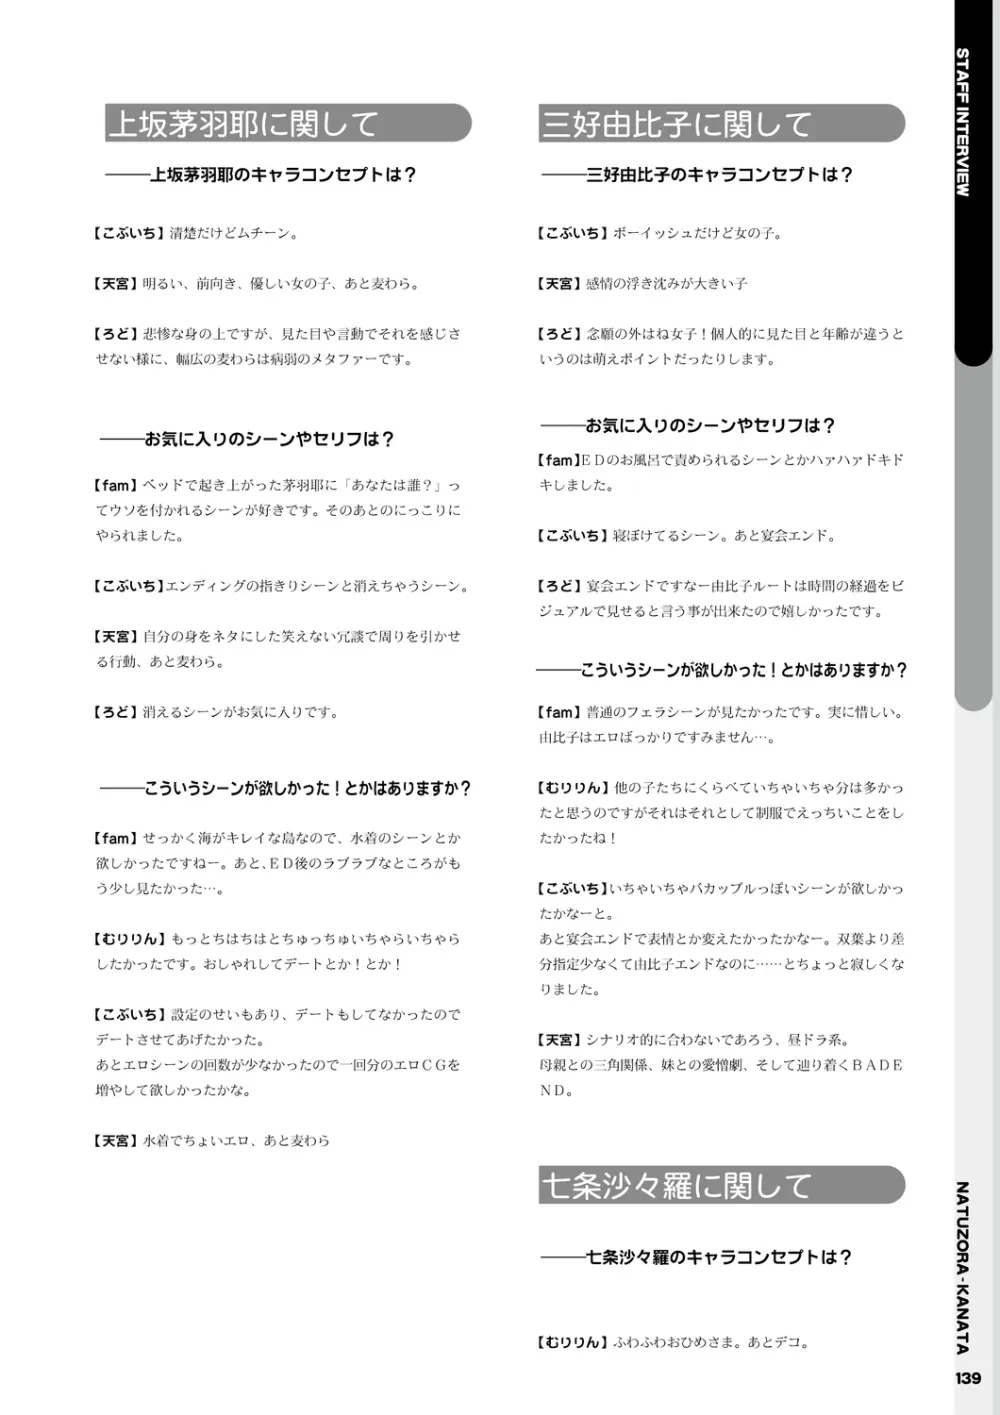 夏空カナタ オフィシャル・ビジュアルファンブック 141ページ